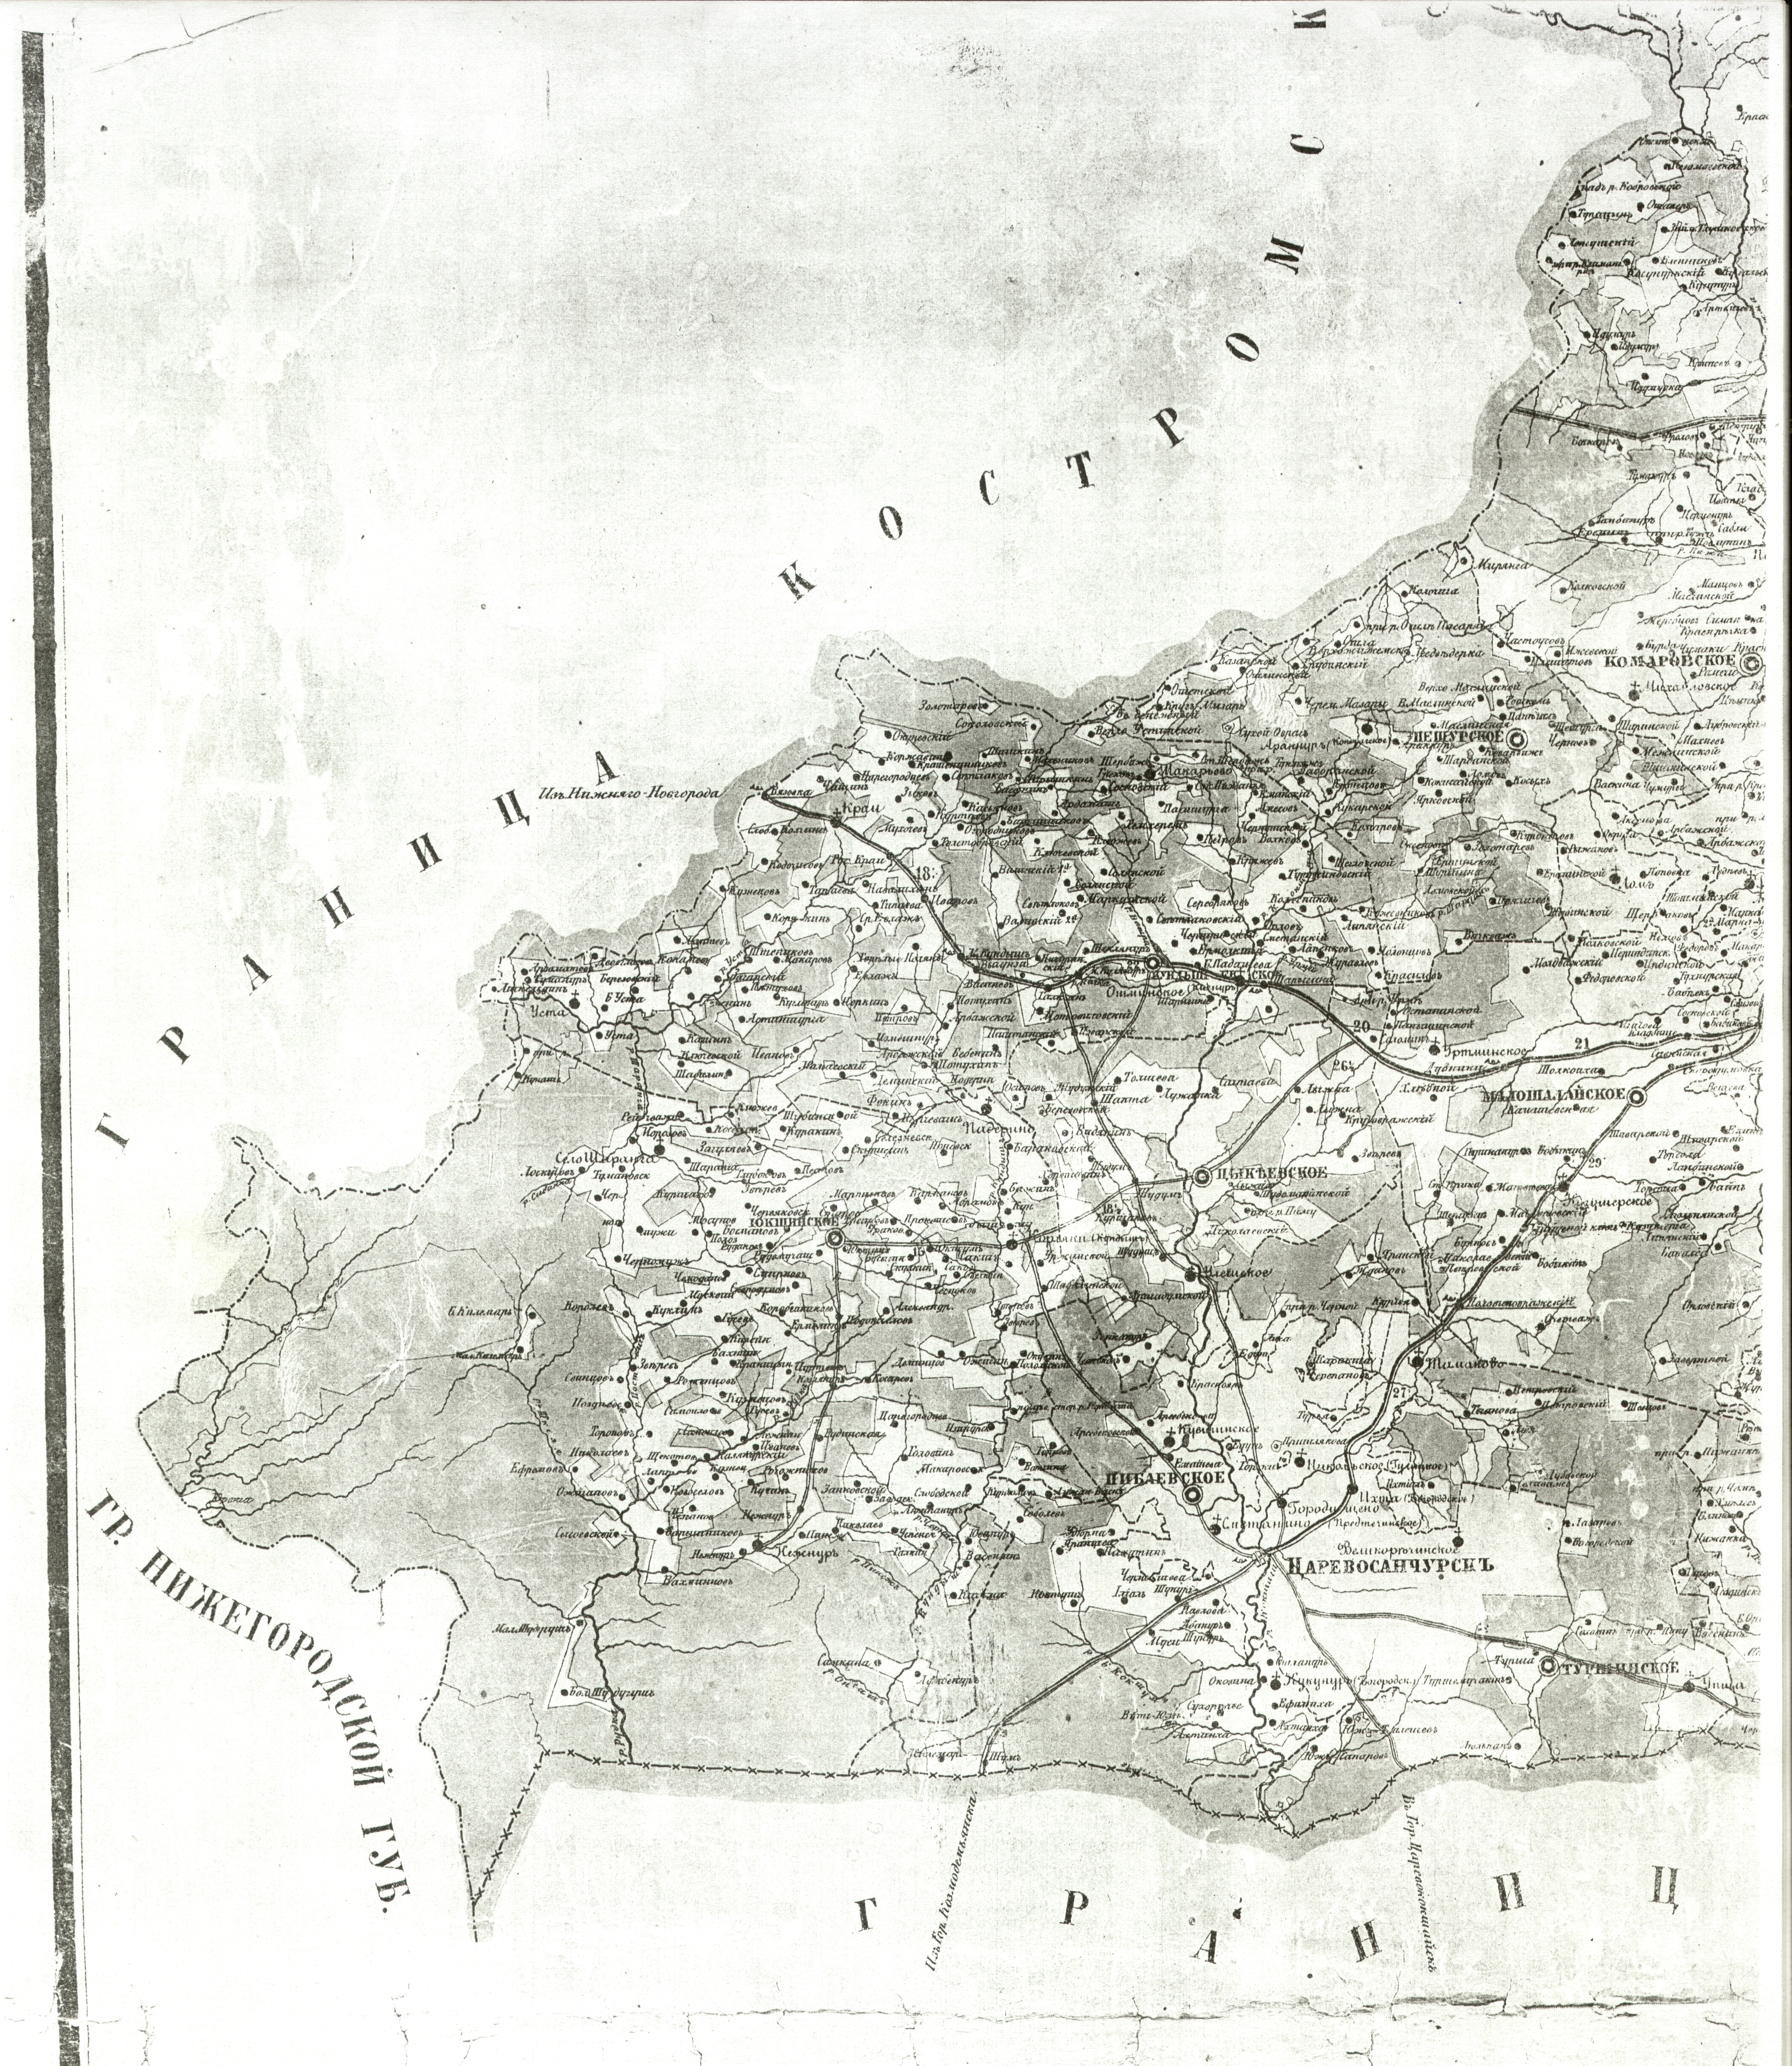 Карта наших мест 1868 года.Старая Рудка еще называется Ожиганов починок.Прислал Василий Куклин.